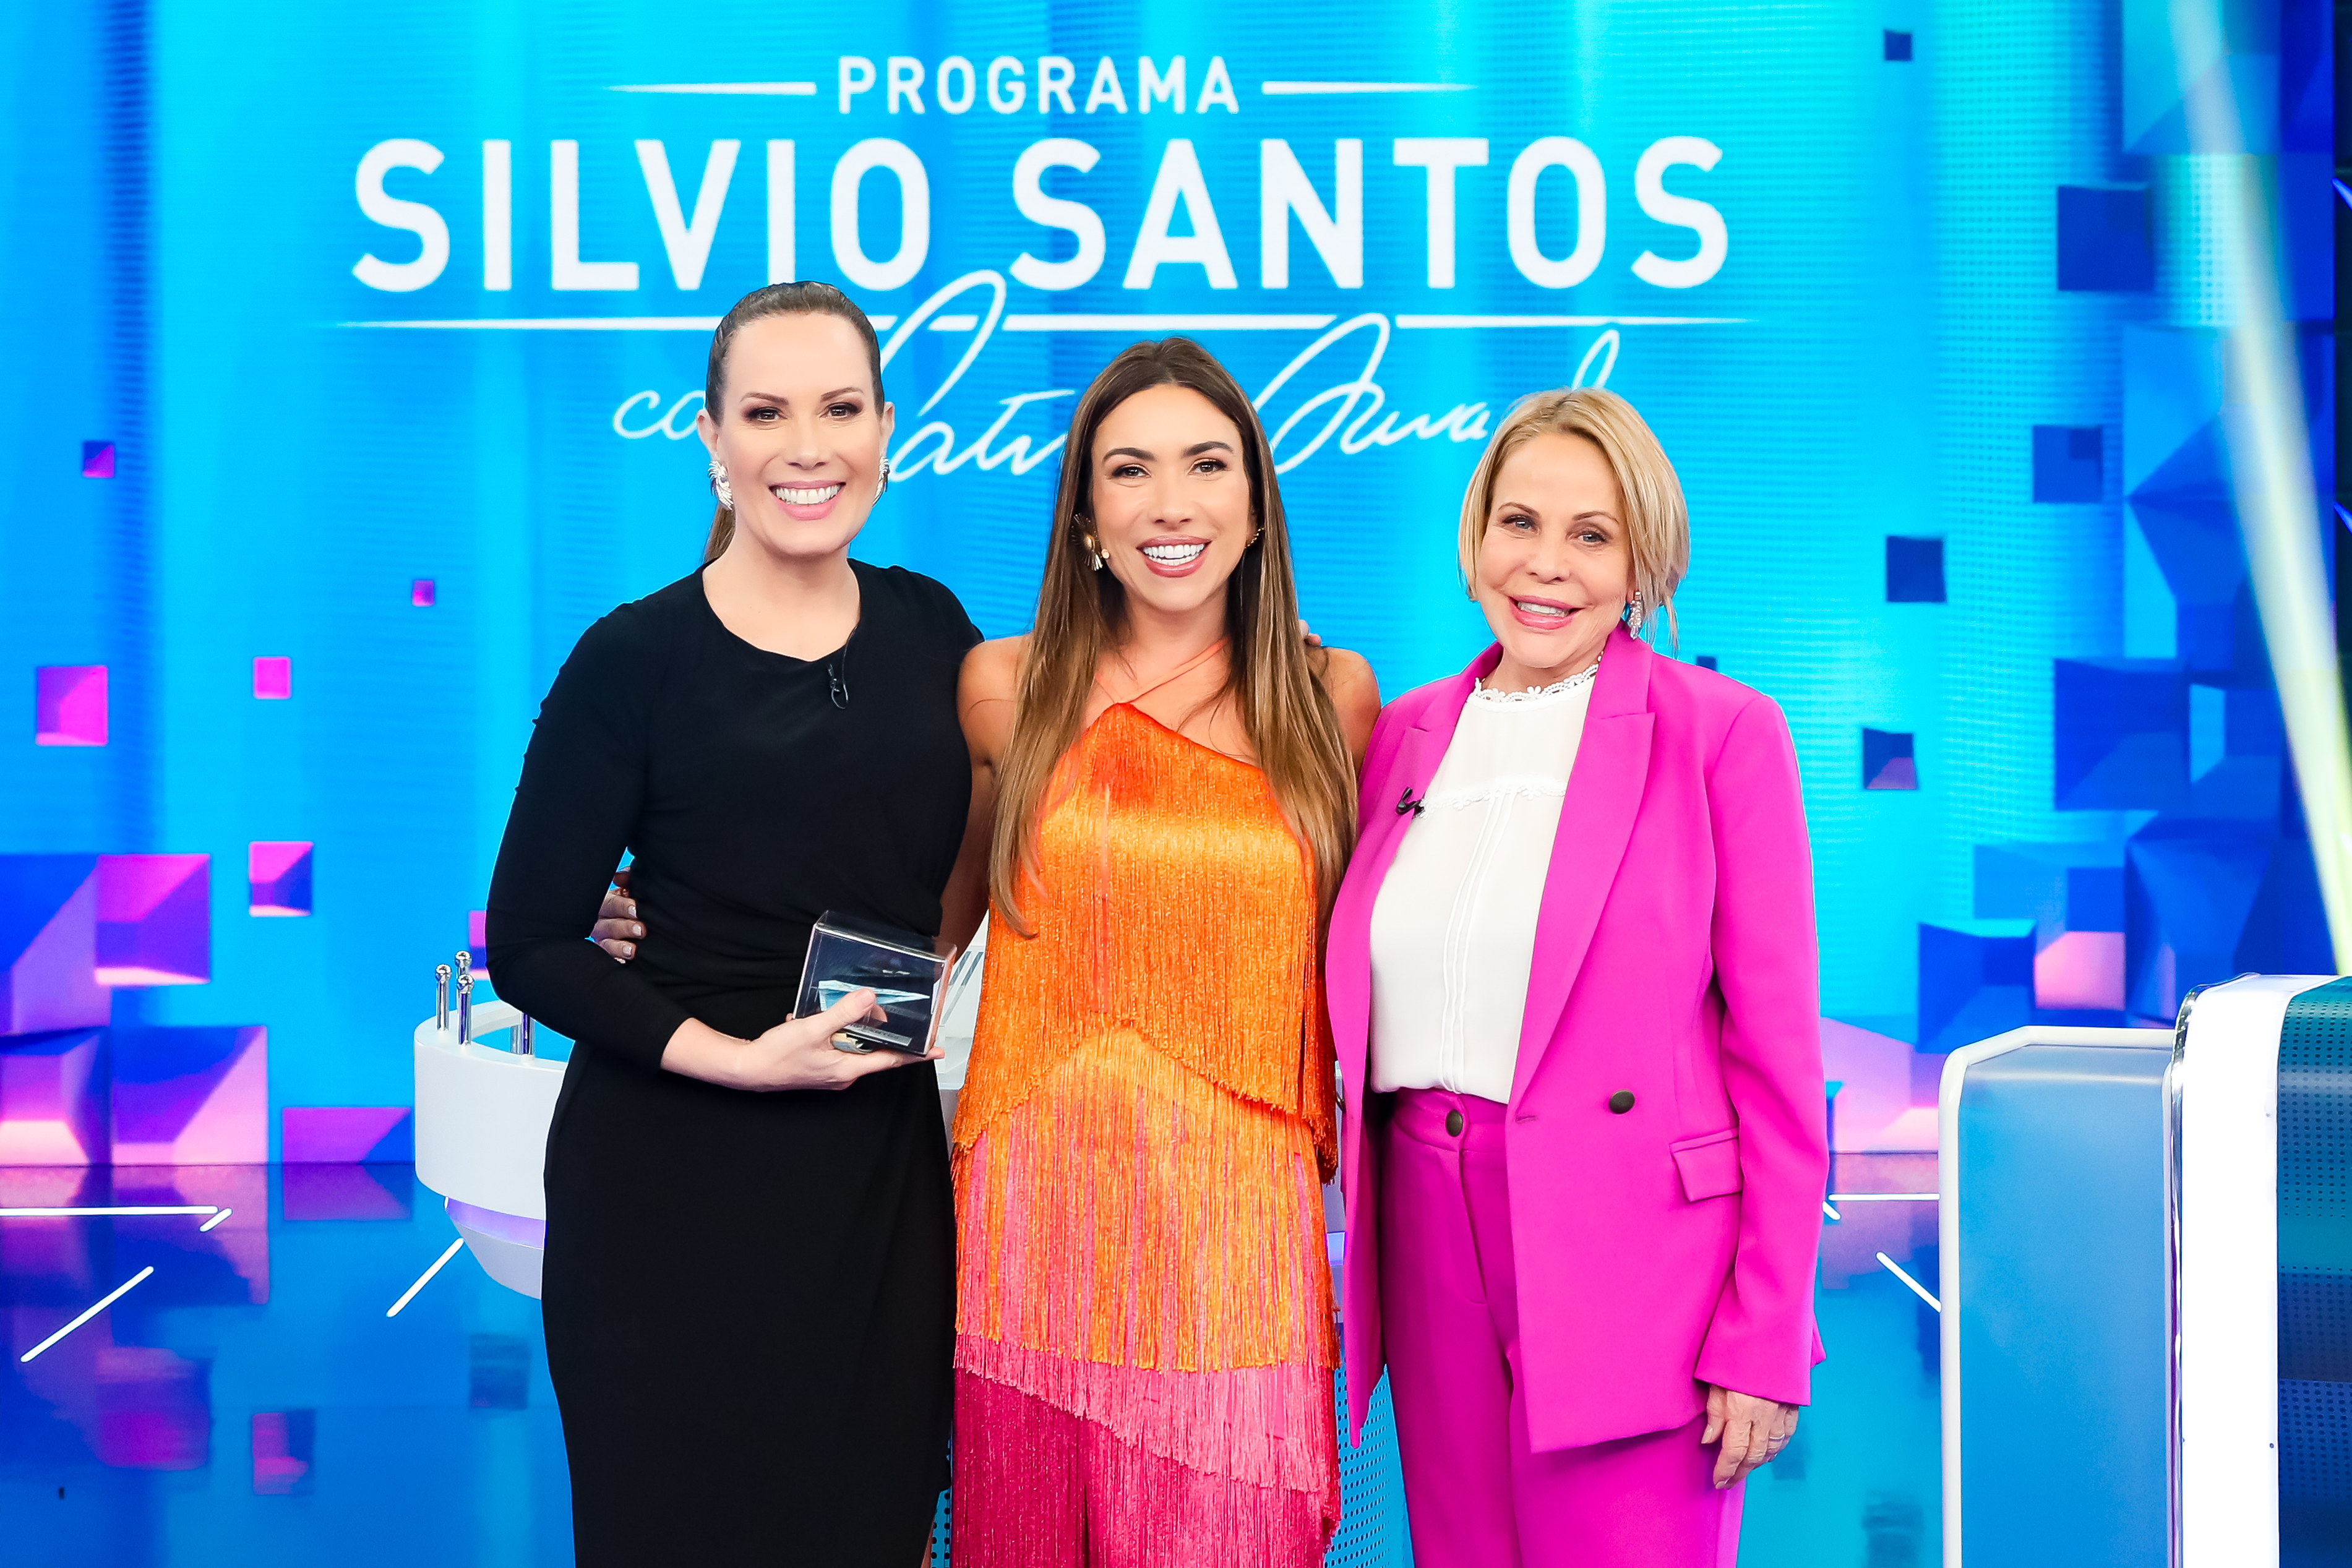 Nina volta ao “Programa Silvio Santos”, agora como convidada do